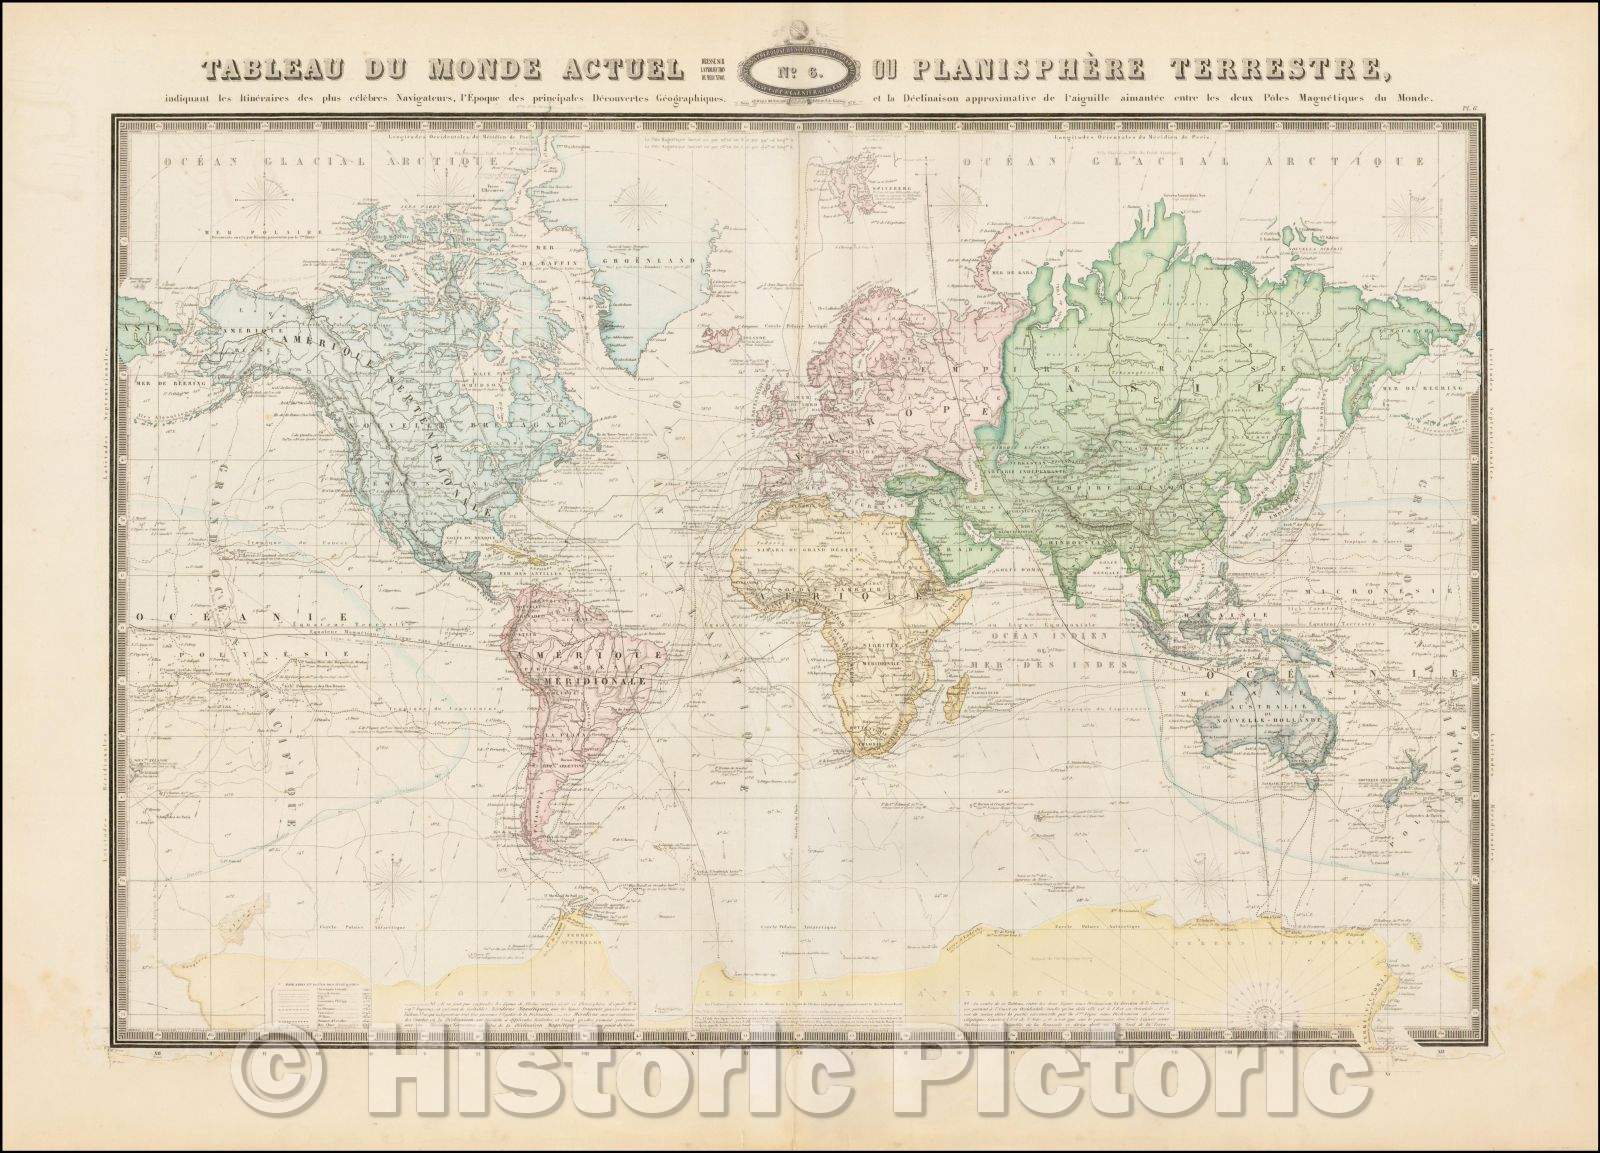 Historic Map - Tableau Du Monde Actuel Ou Planisphere Terrestre, indiquant les Itineraires de plus celebres Naigateurs, 1861 - Vintage Wall Art